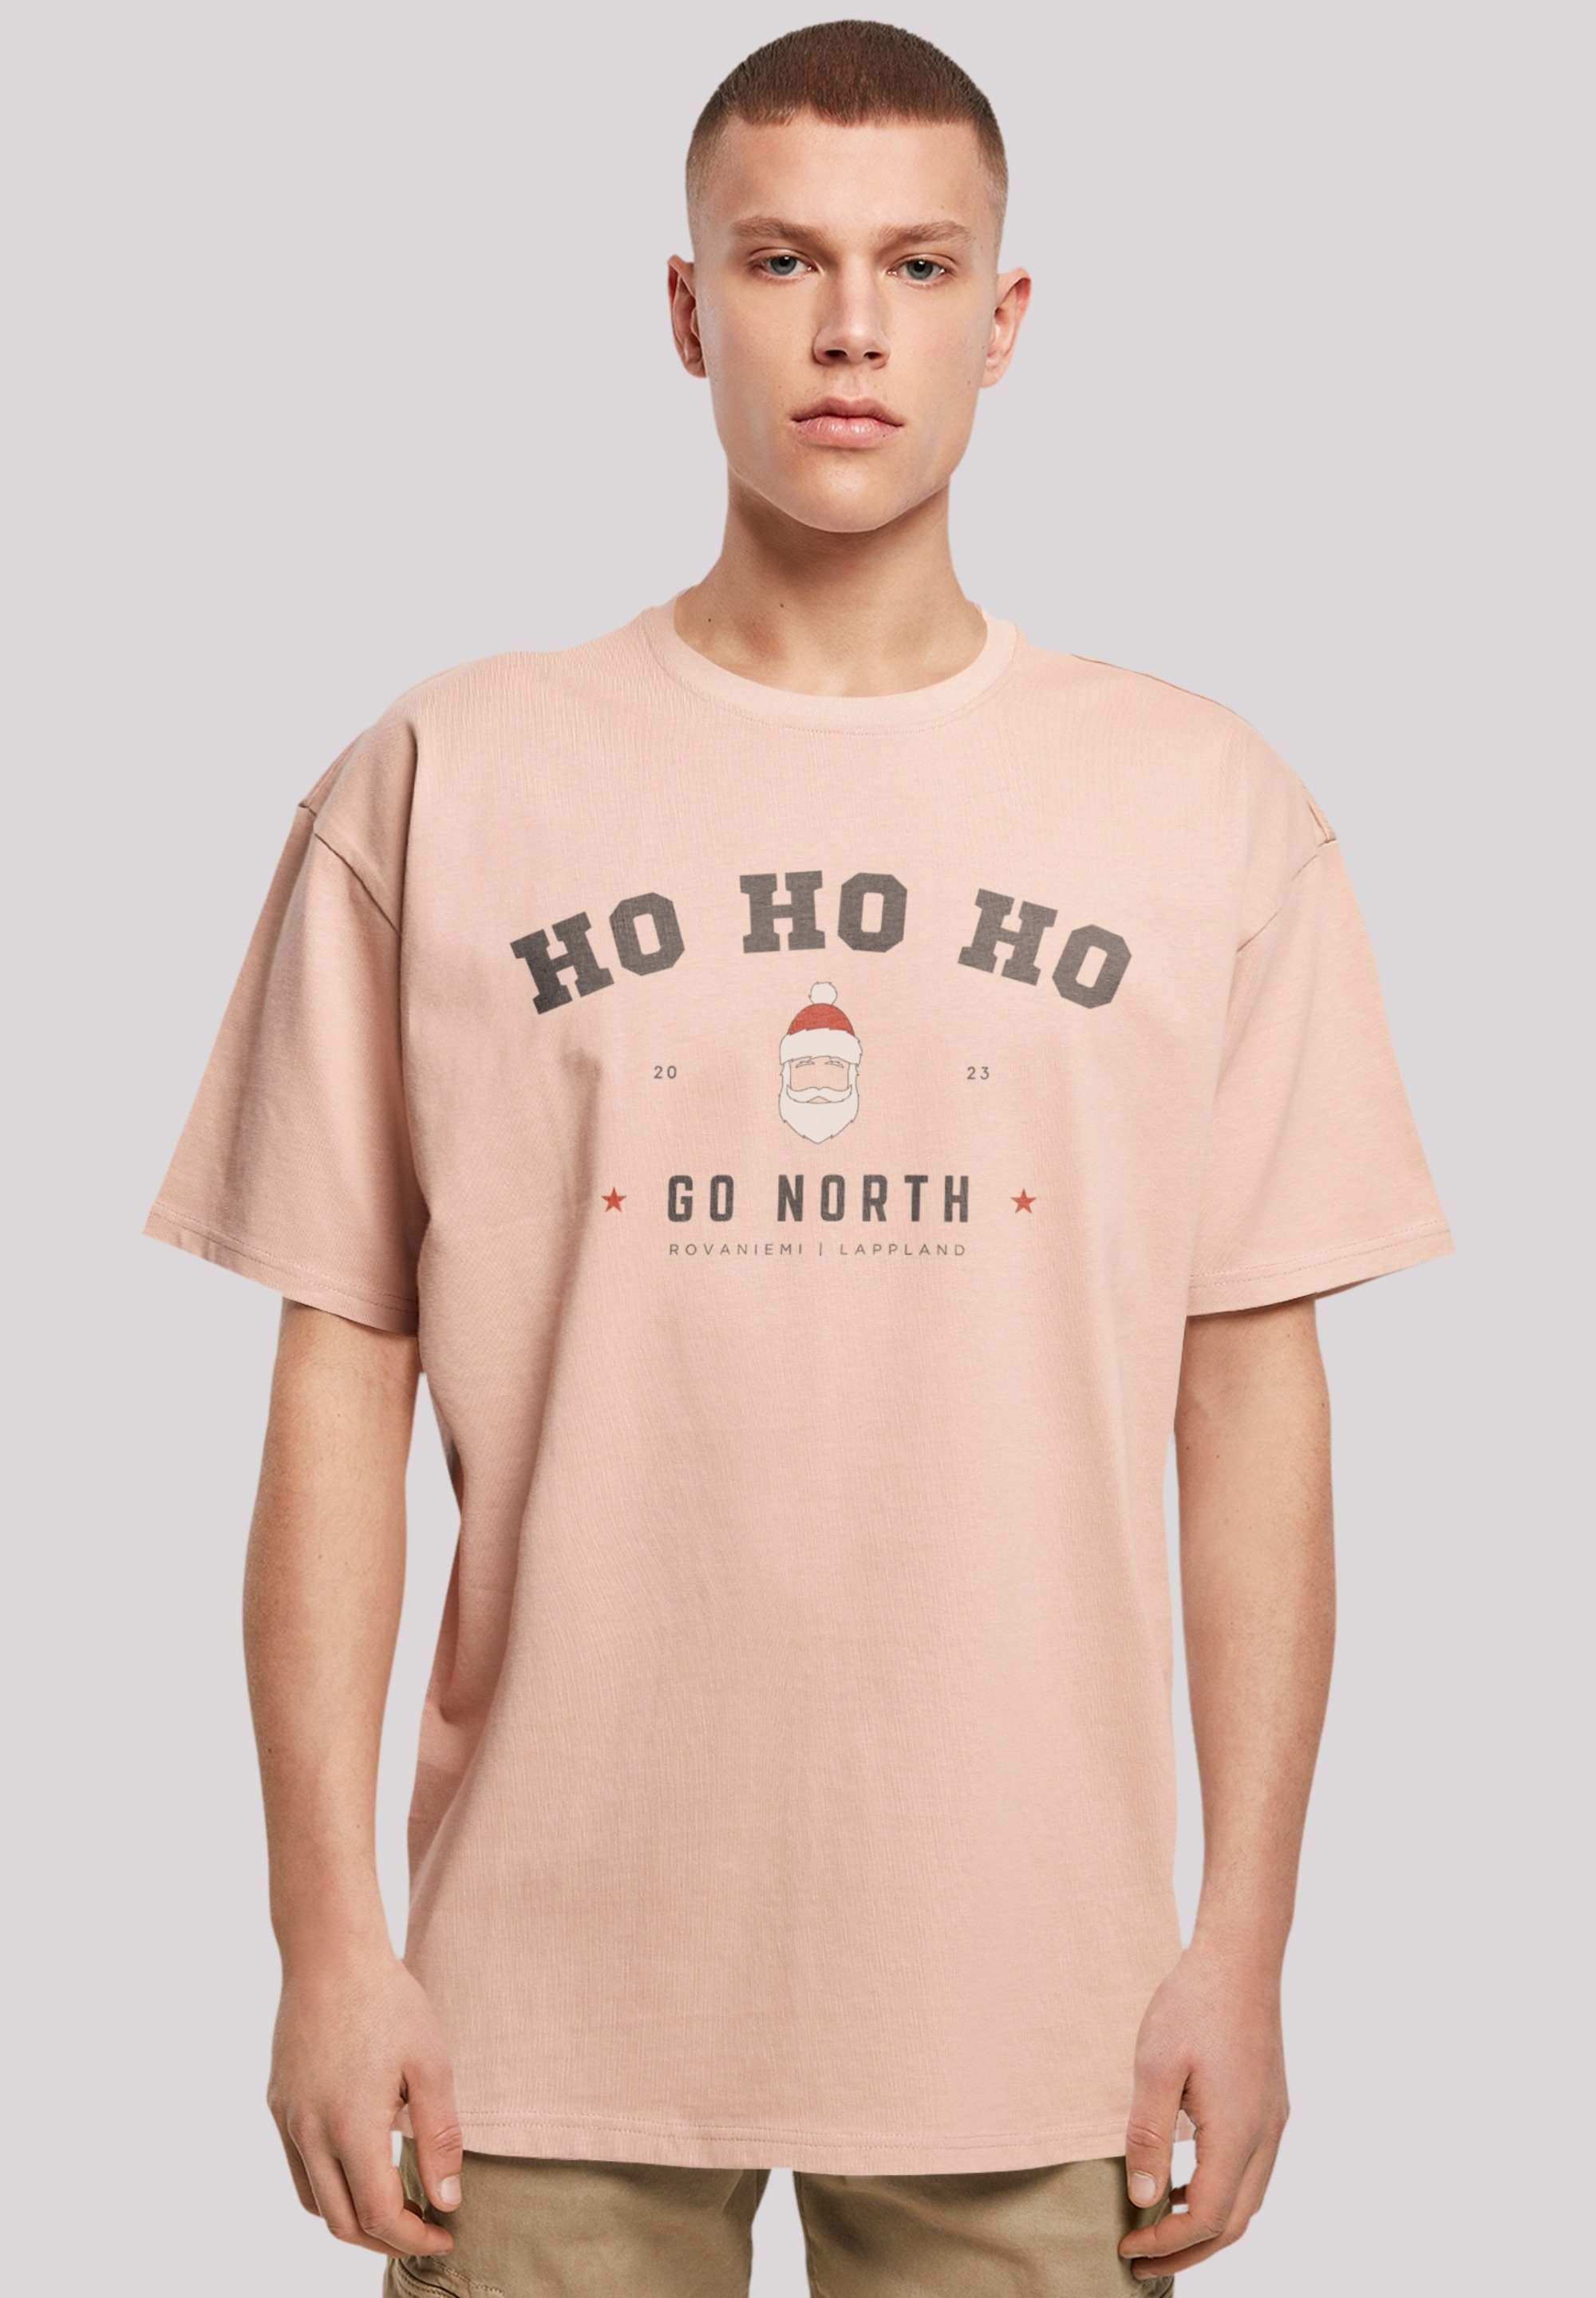 F4NT4STIC T-Shirt Ho Ho Ho Santa Claus Weihnachten Weihnachten, Geschenk, Logo amber